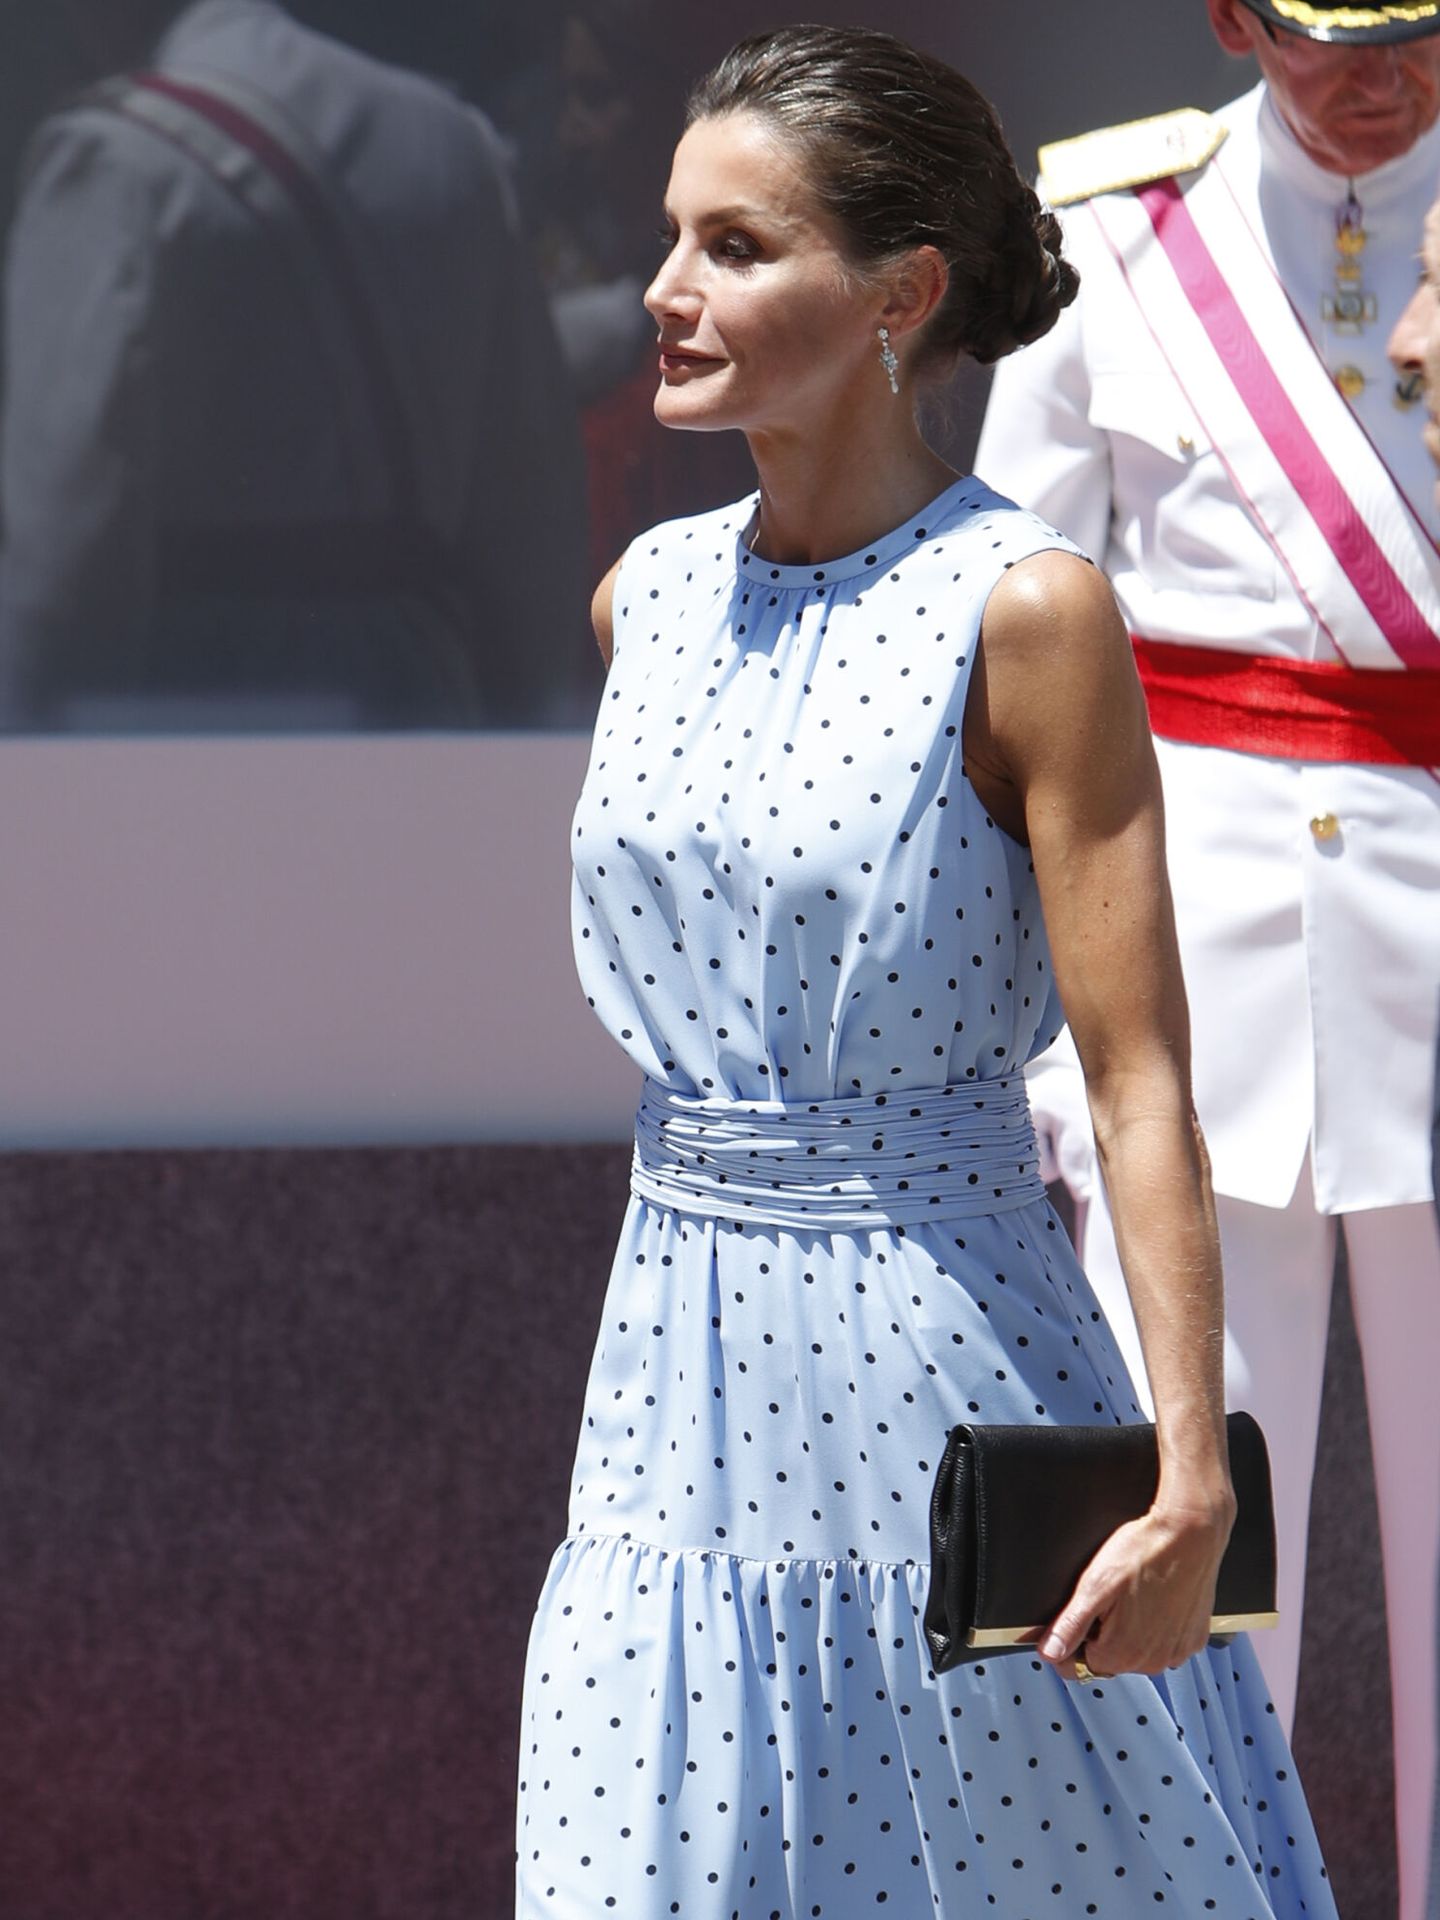 dañar valor Huracán El ranking de los bolsos favoritos de la reina Letizia: de Carolina Herrera  a Nina Ricci